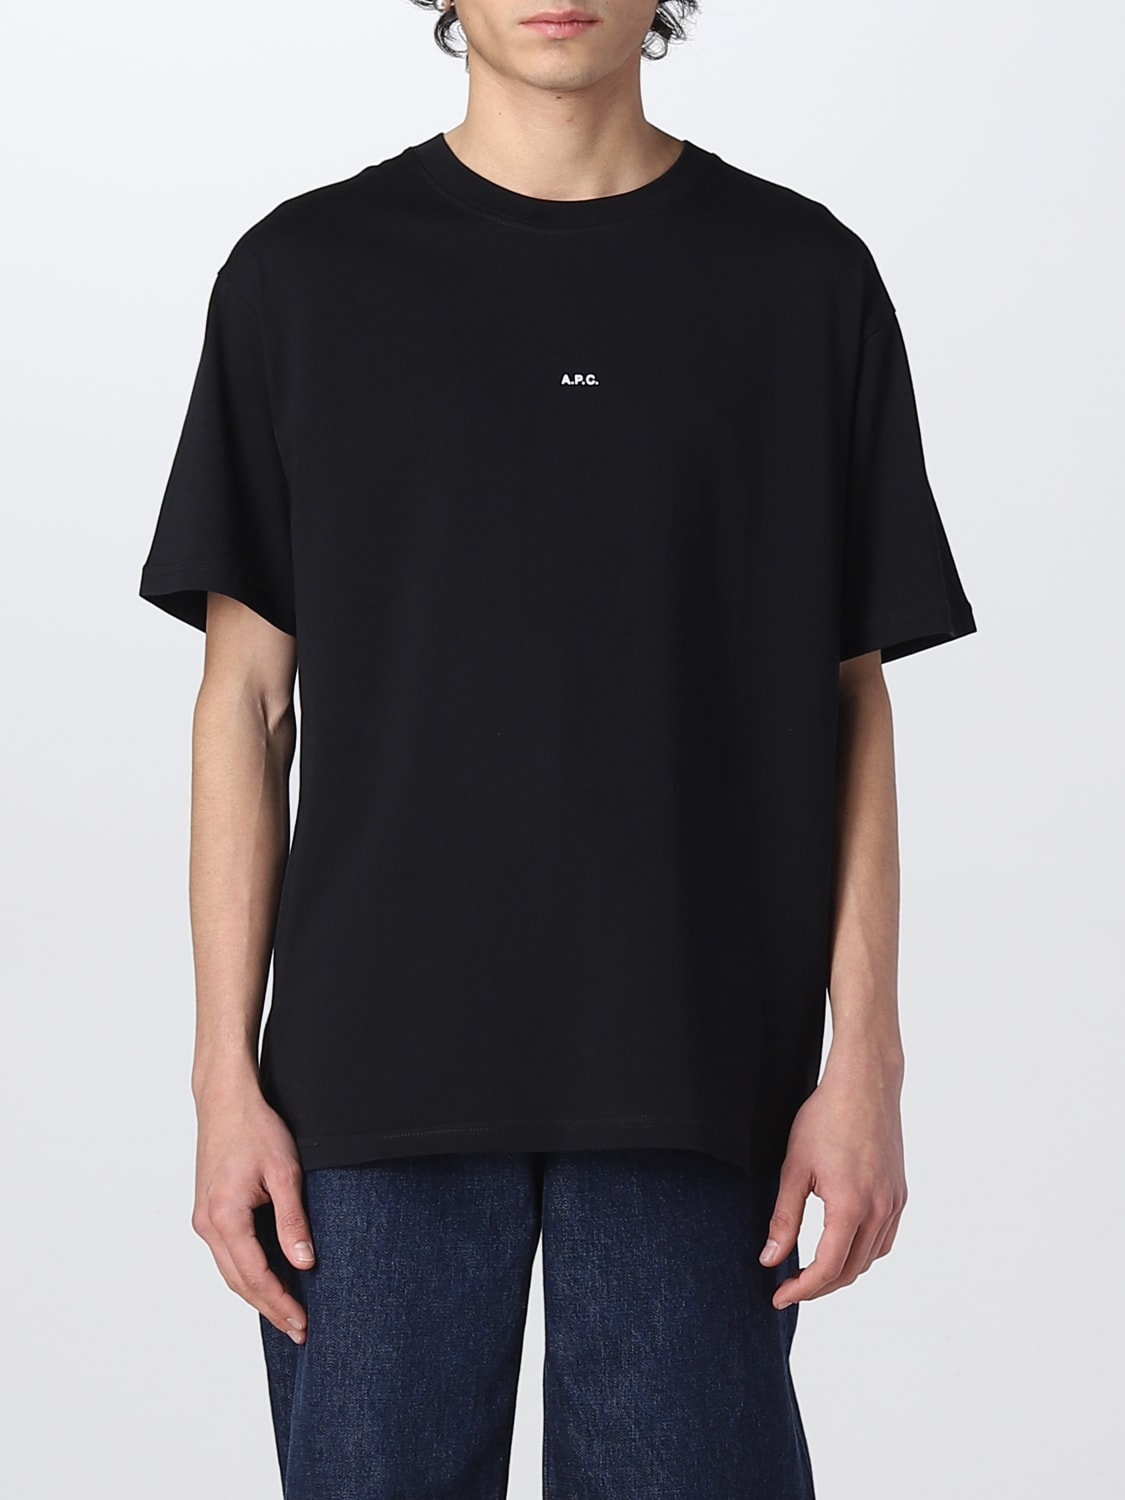 A.p.c. Outlet: t-shirt for man - Black | A.p.c. t-shirt